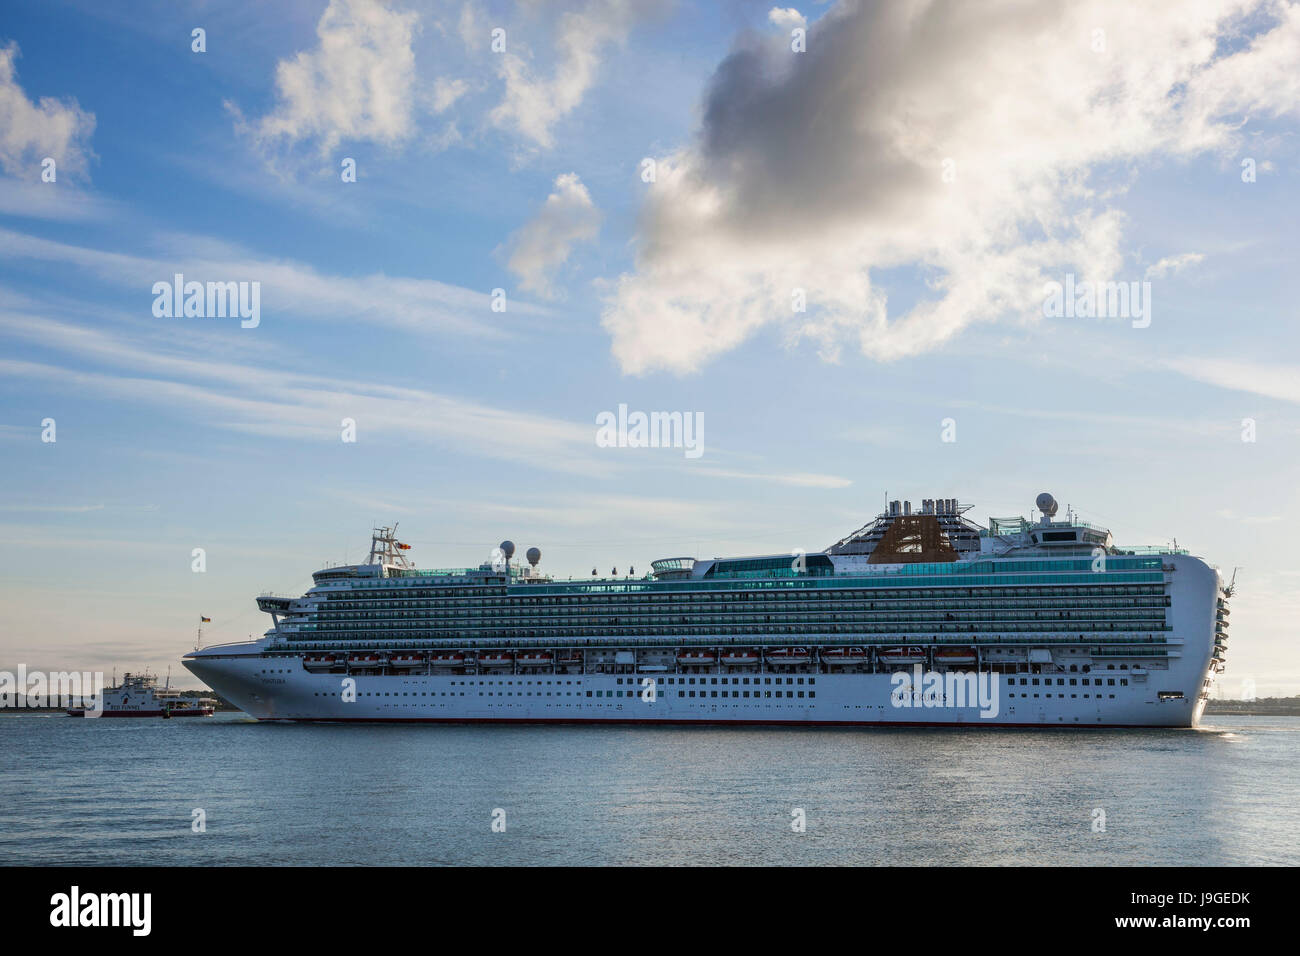 England, Hampshire, P&O Cruise Ship 'Ventura' Entering Southampton Harbour, Stock Photo